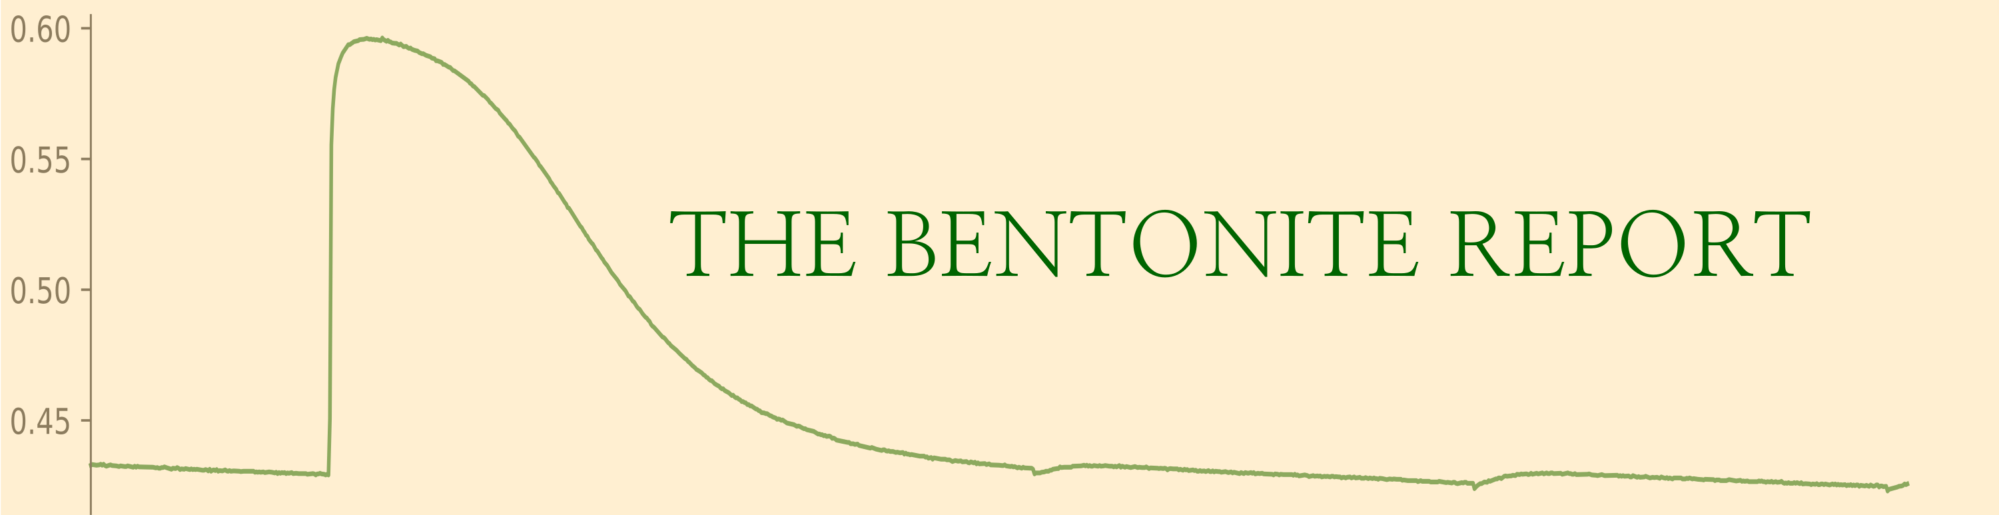 The Bentonite Report